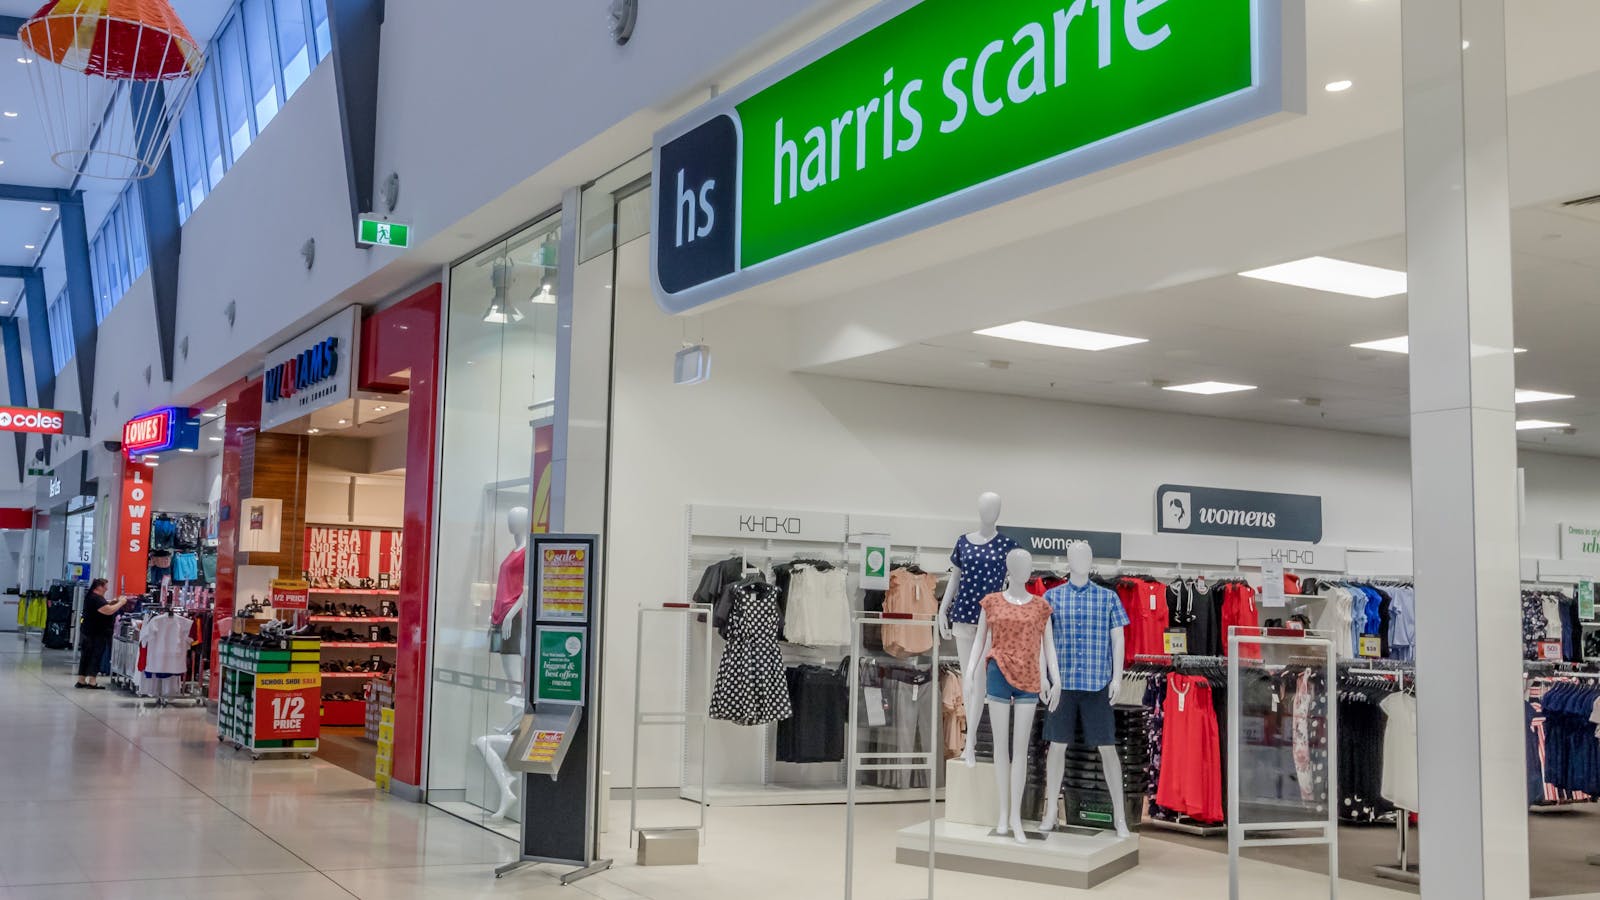 harris scarfe mall